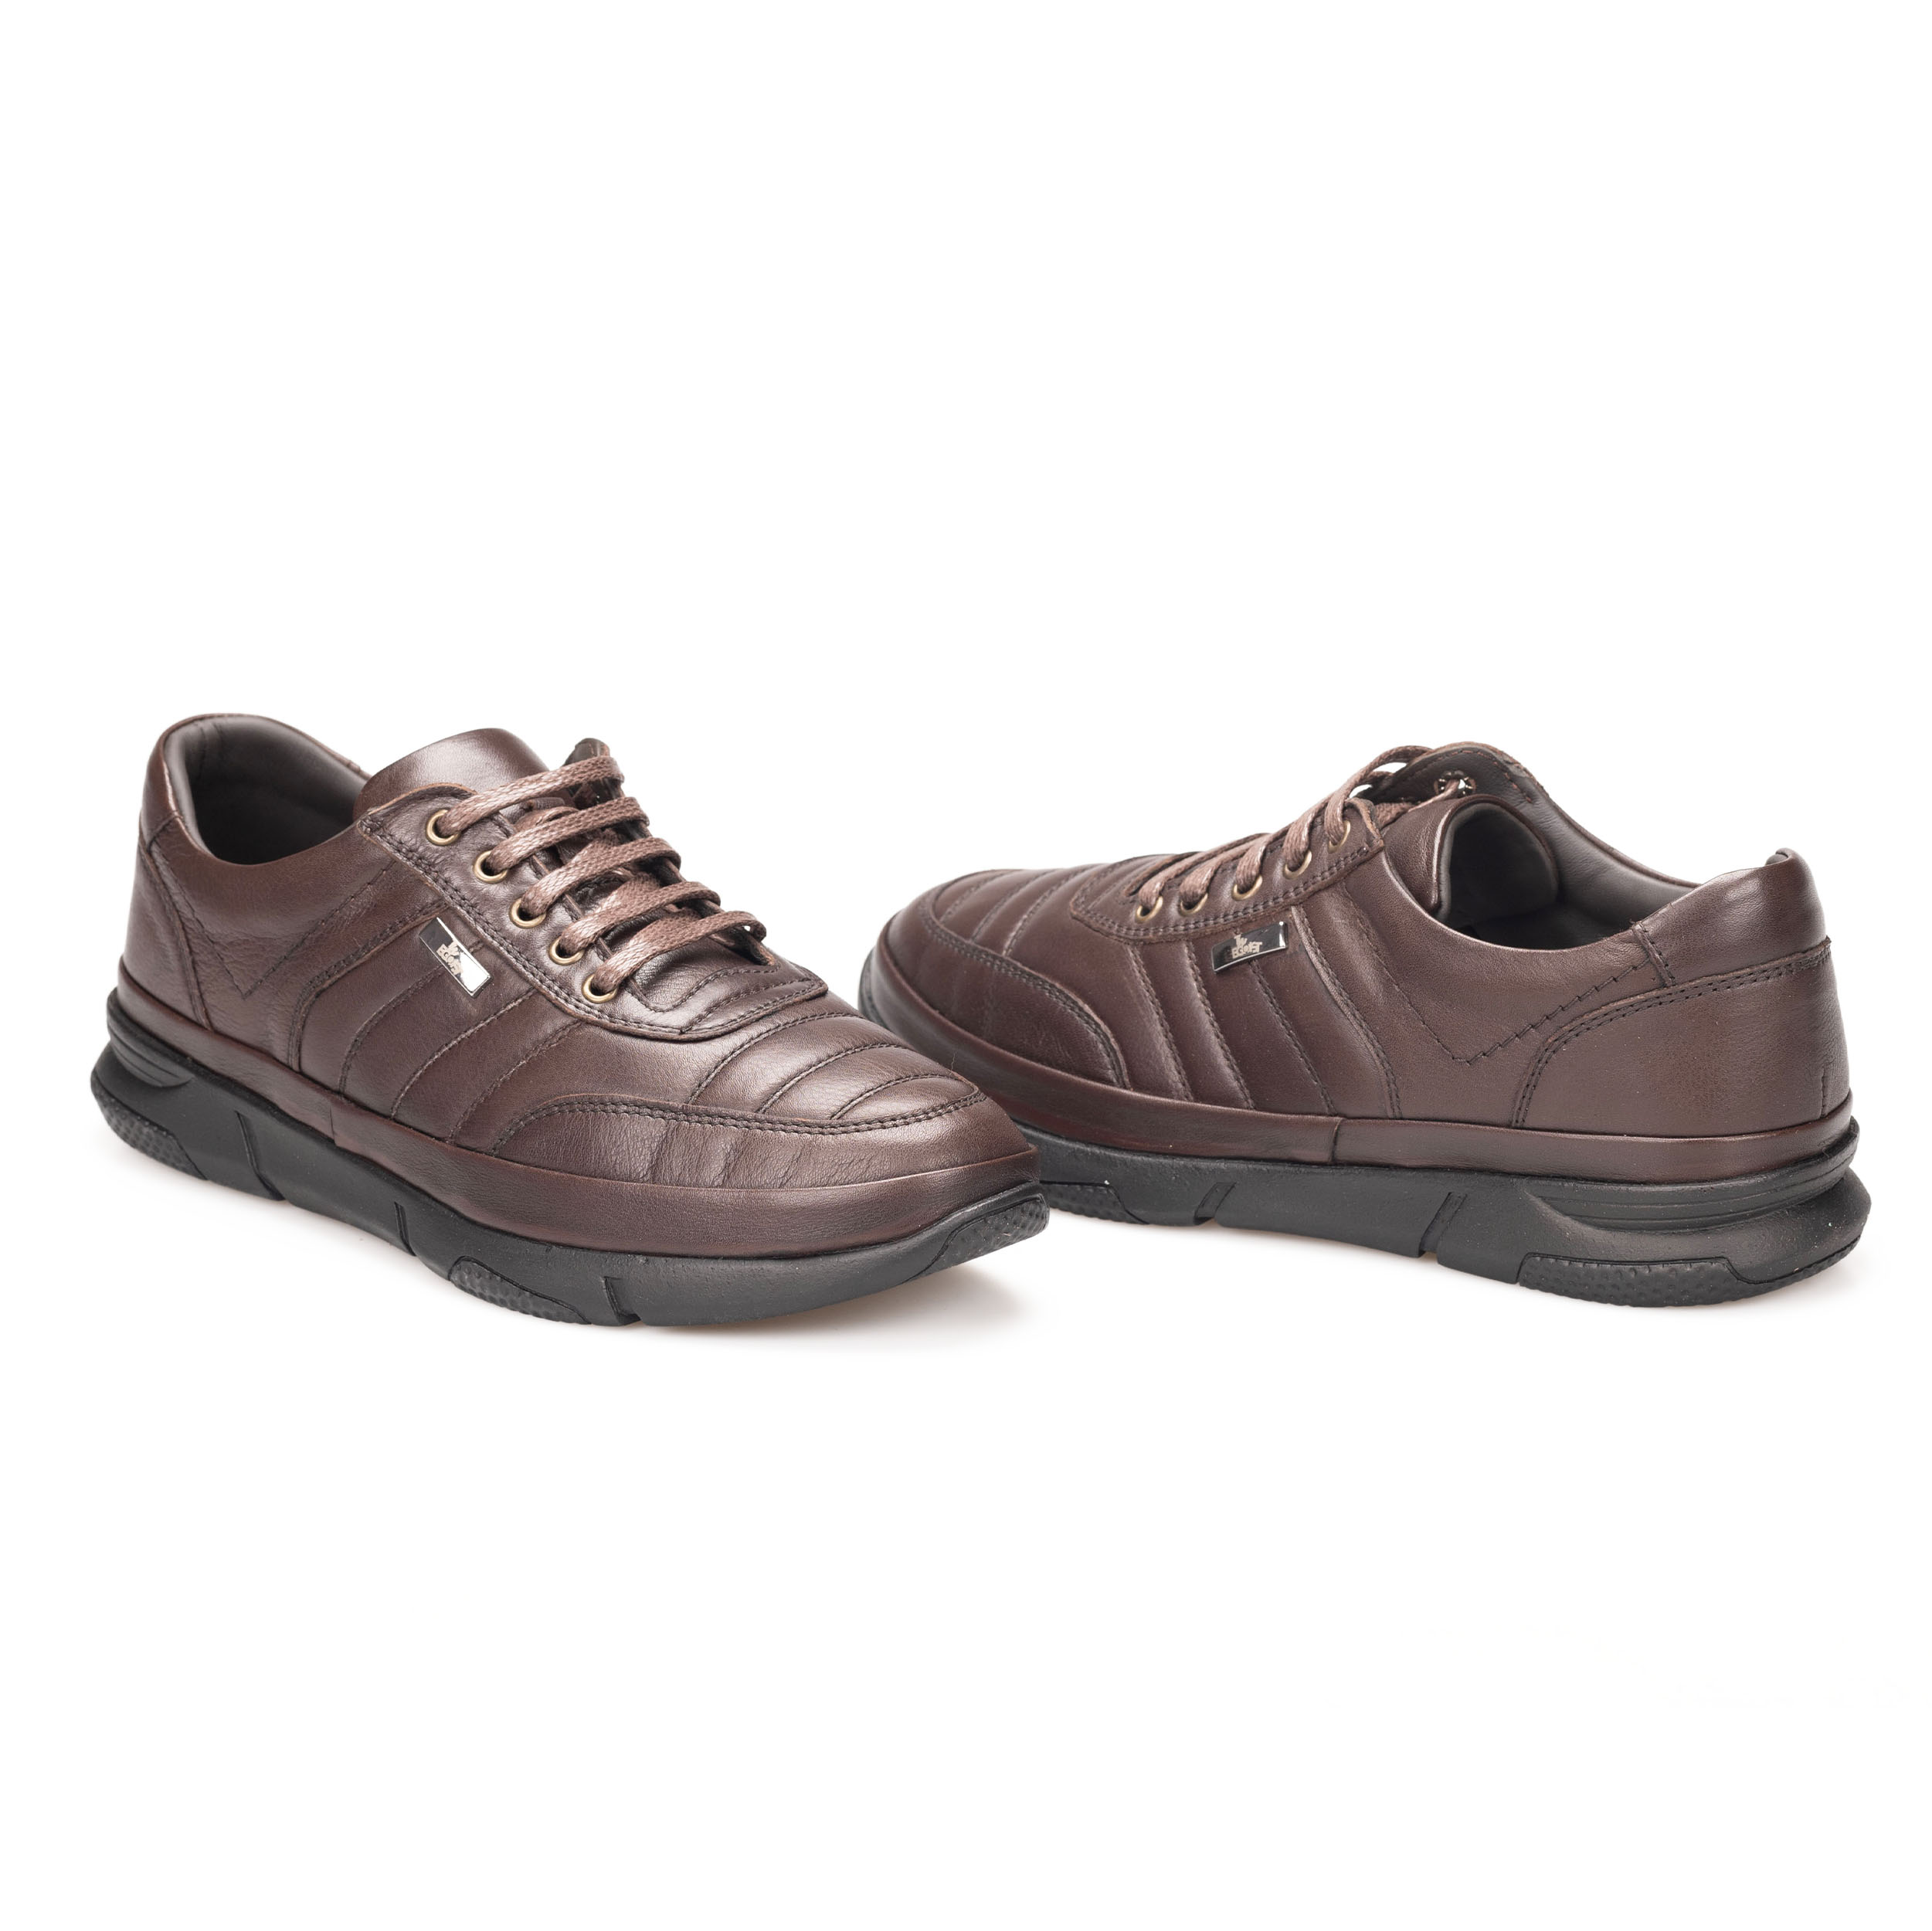 Erkek Hakiki Deri Kauçuk Taban Günlük Ayakkabı - Sneaker, Renk: Kahverengi, Beden: 40